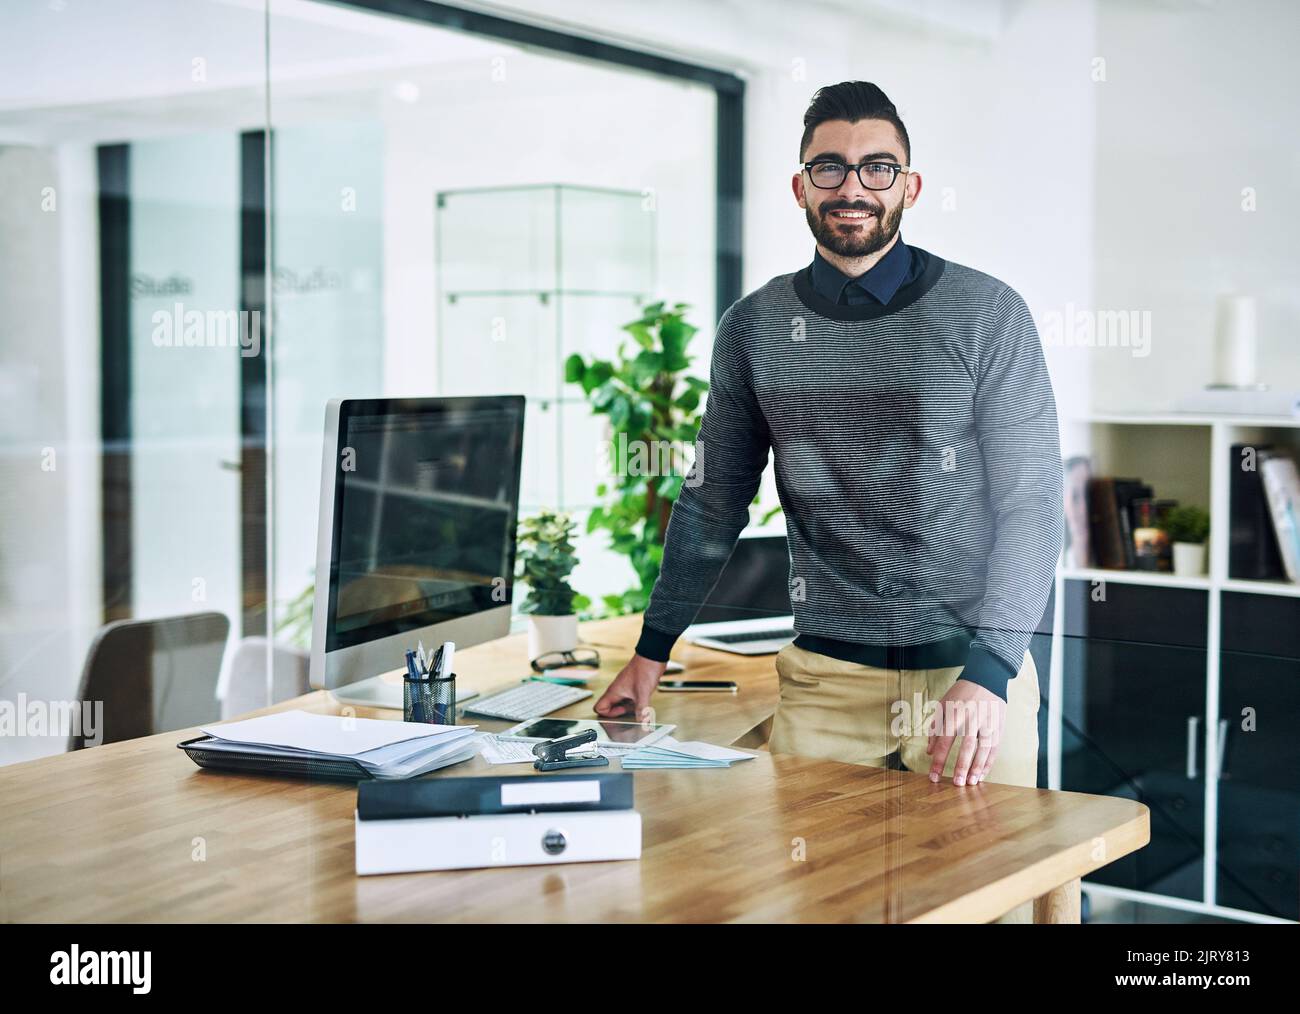 Die harte Arbeit zahlt sich schließlich aus. Porträt eines selbstbewussten jungen Designers, der an seinem Schreibtisch in einem Büro steht. Stockfoto